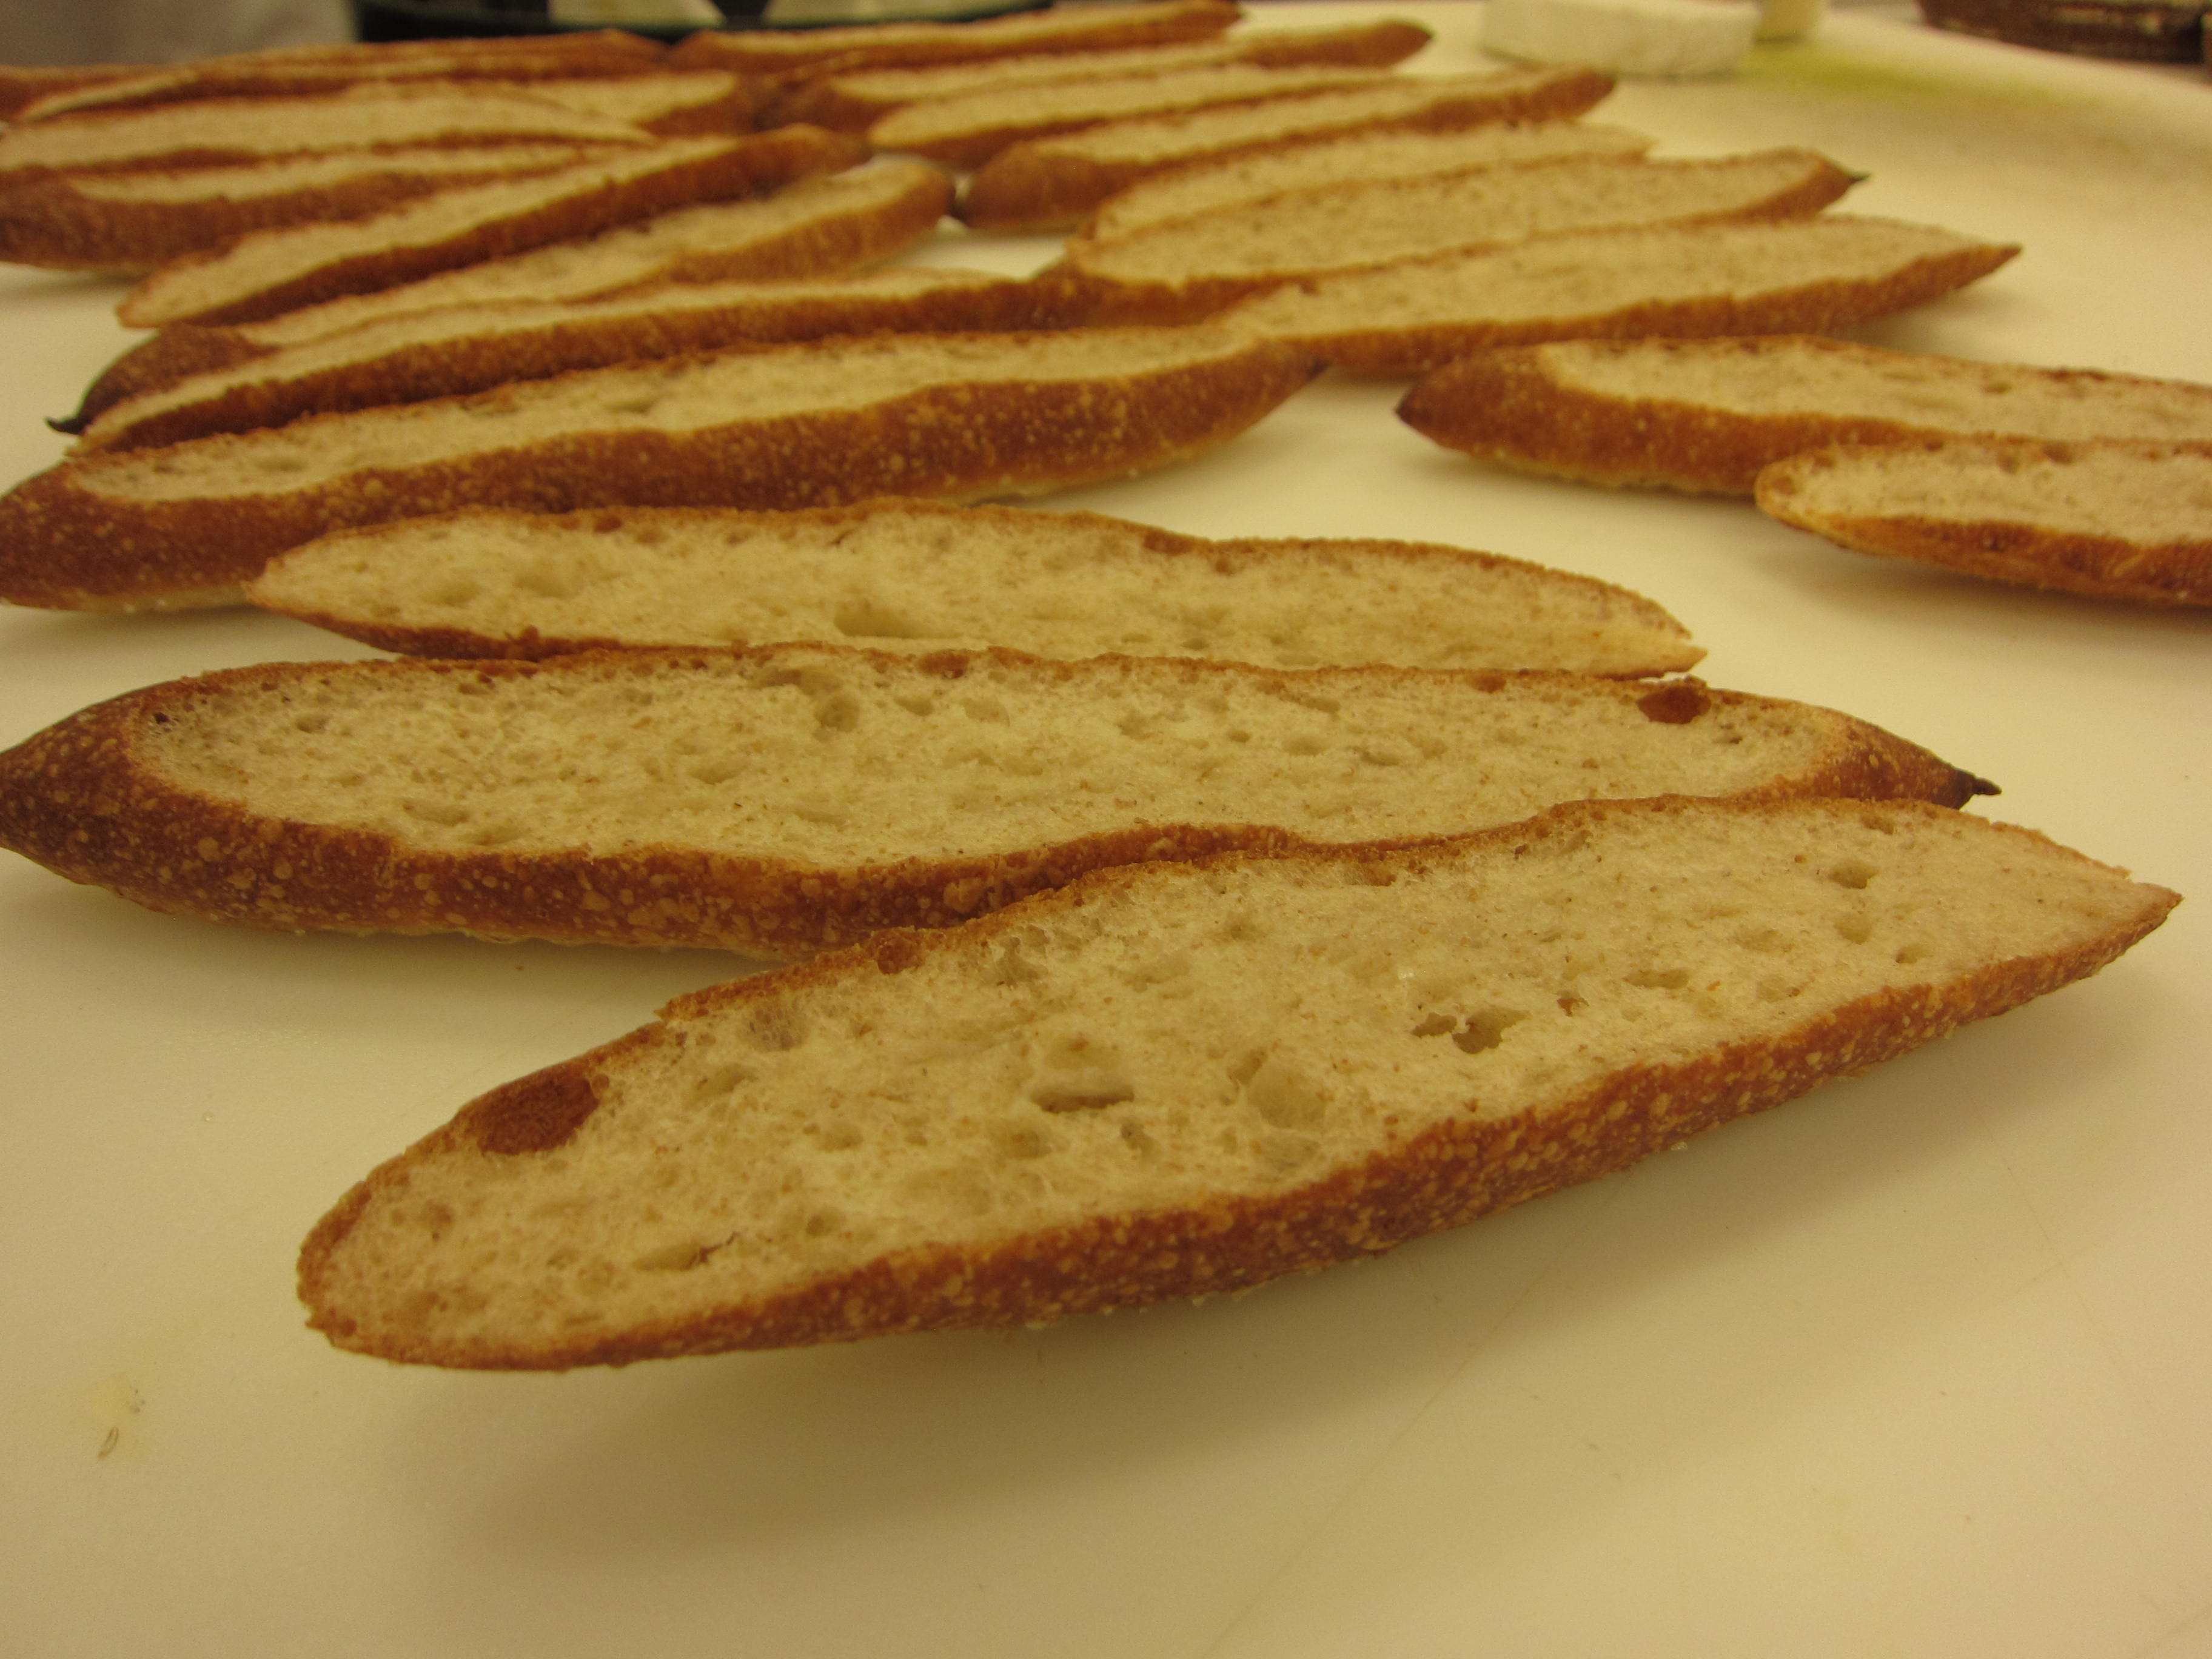 Roan Mill sandwich bread